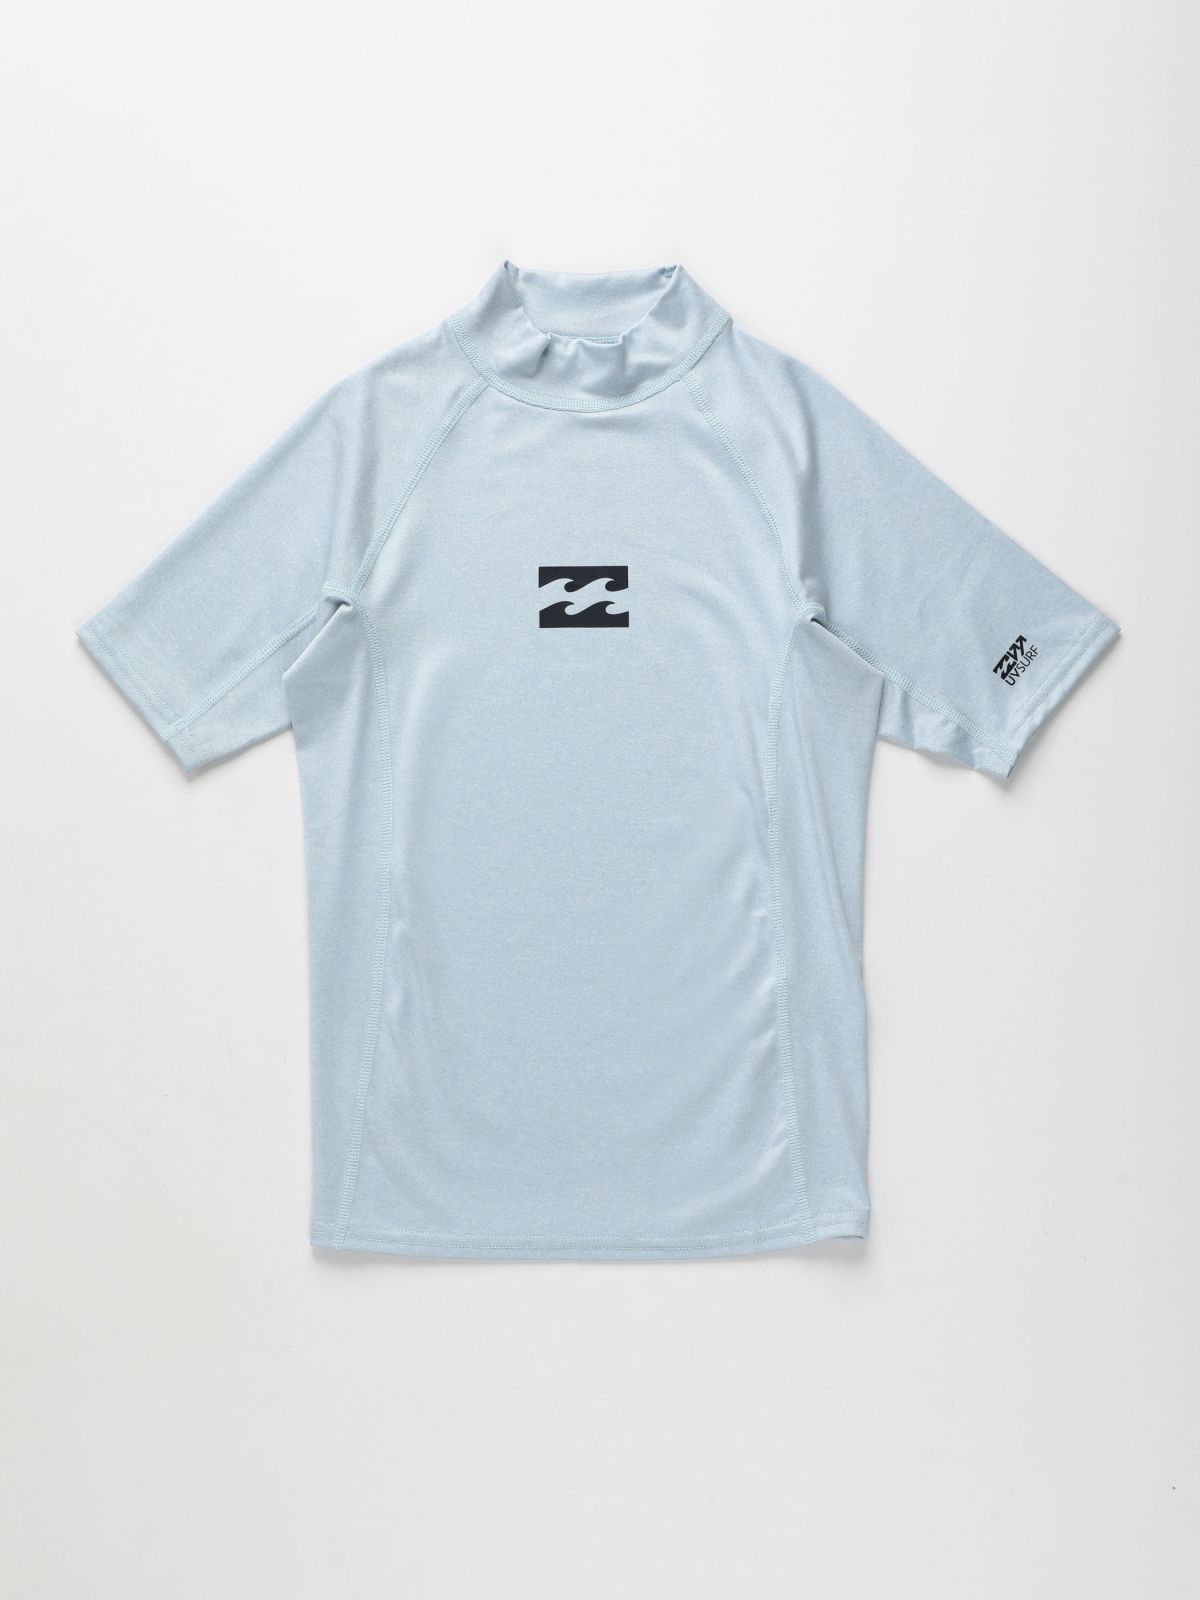  חולצת גלישה עם הדפס לוגו / בנים של BILLABONG